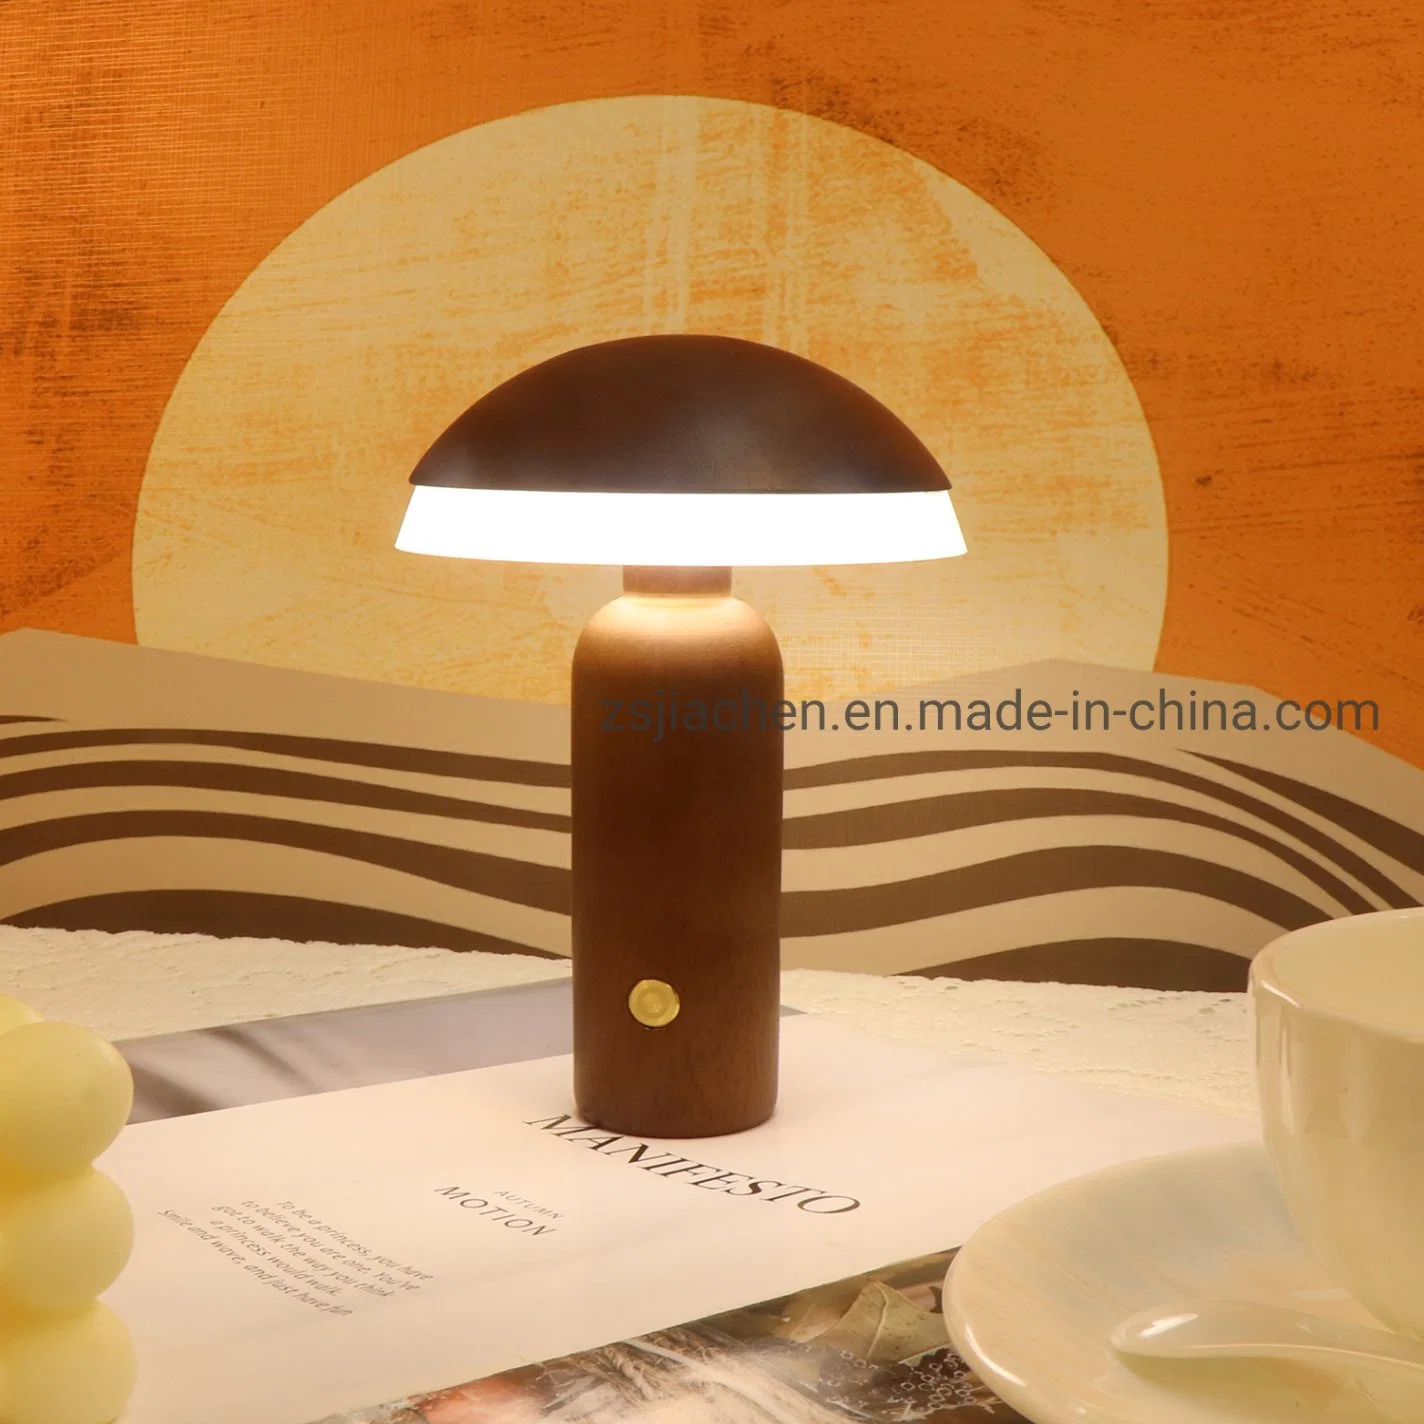 2022 Weihnachtsgeschenk Lampe Warm Weiß Touch Dimmer Schalter Dekoration LED-Kinderlampe mit Akku aus Holz und Nachtlicht